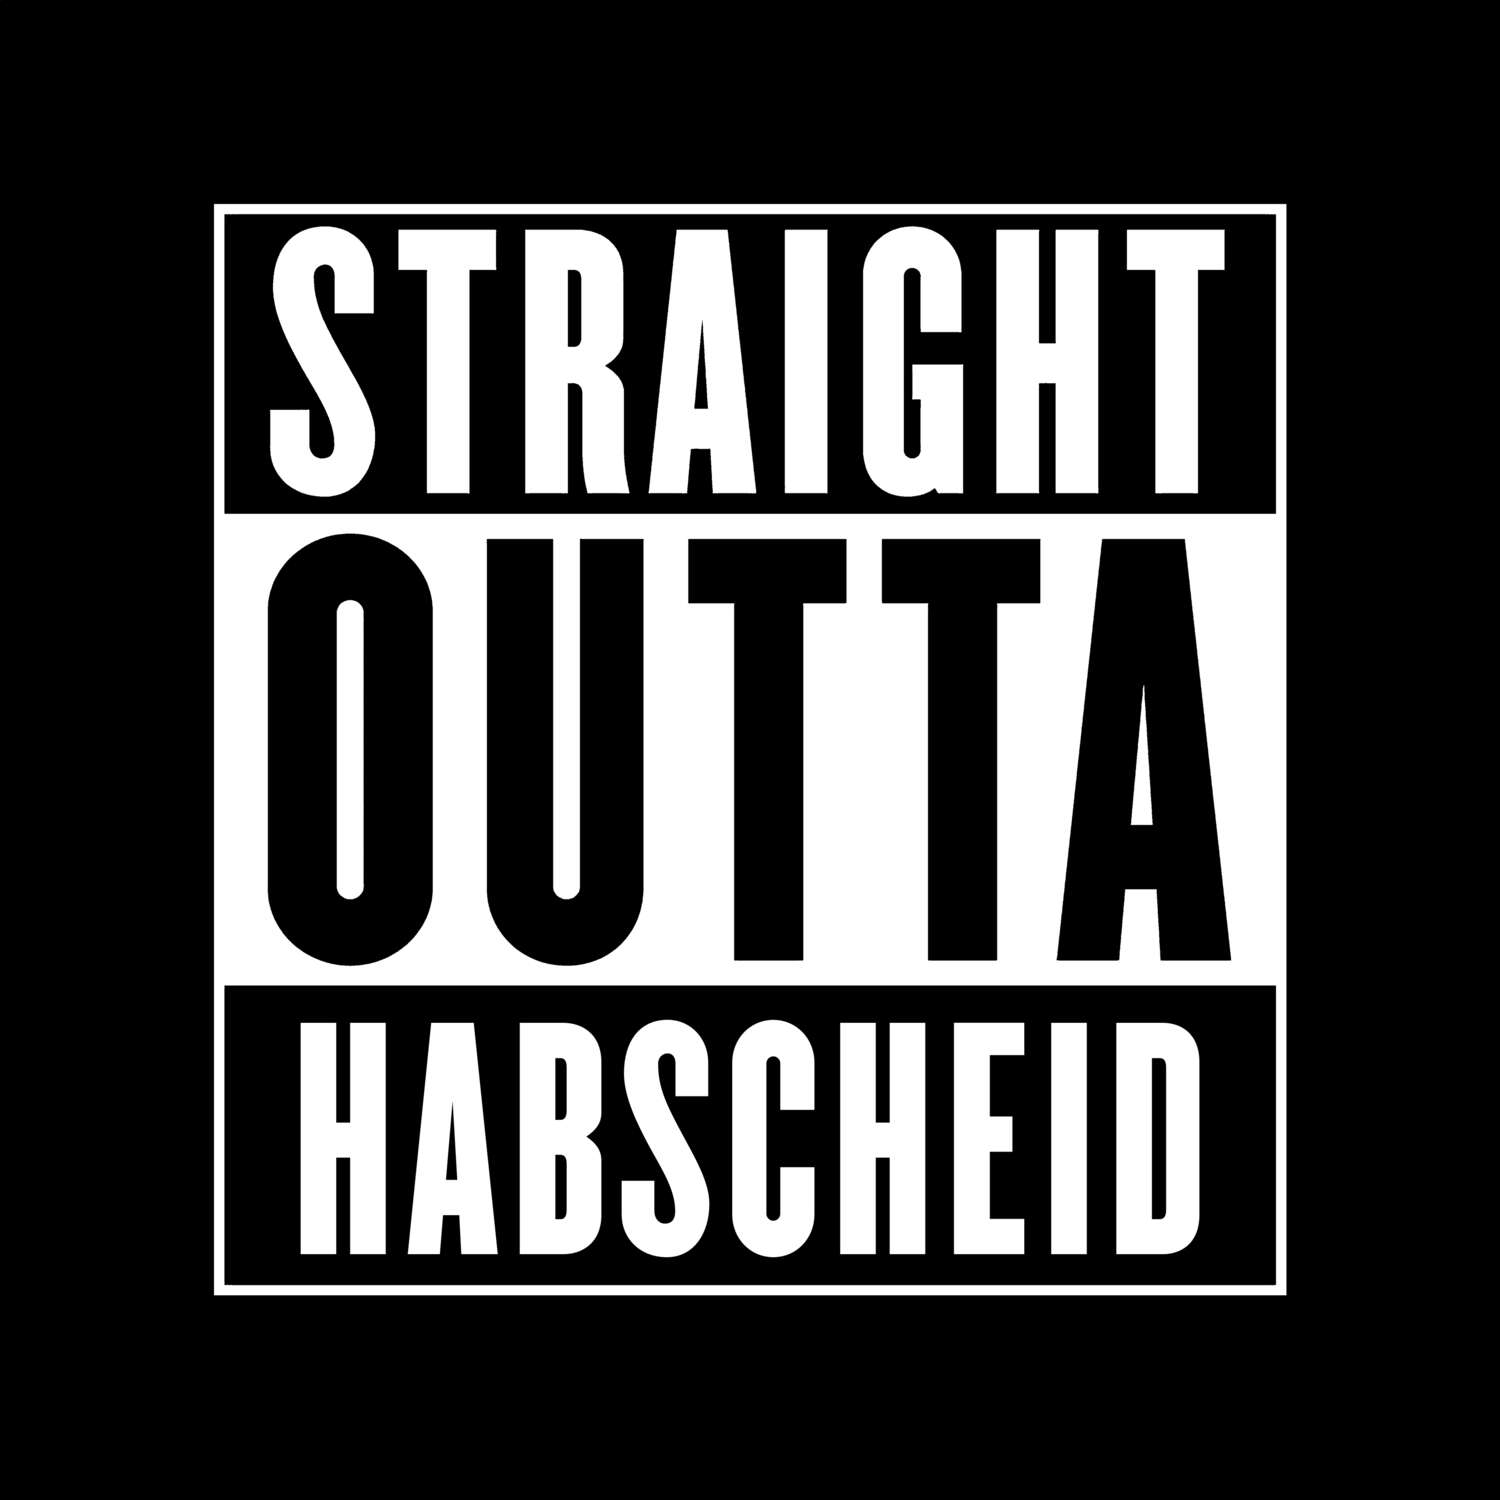 Habscheid T-Shirt »Straight Outta«